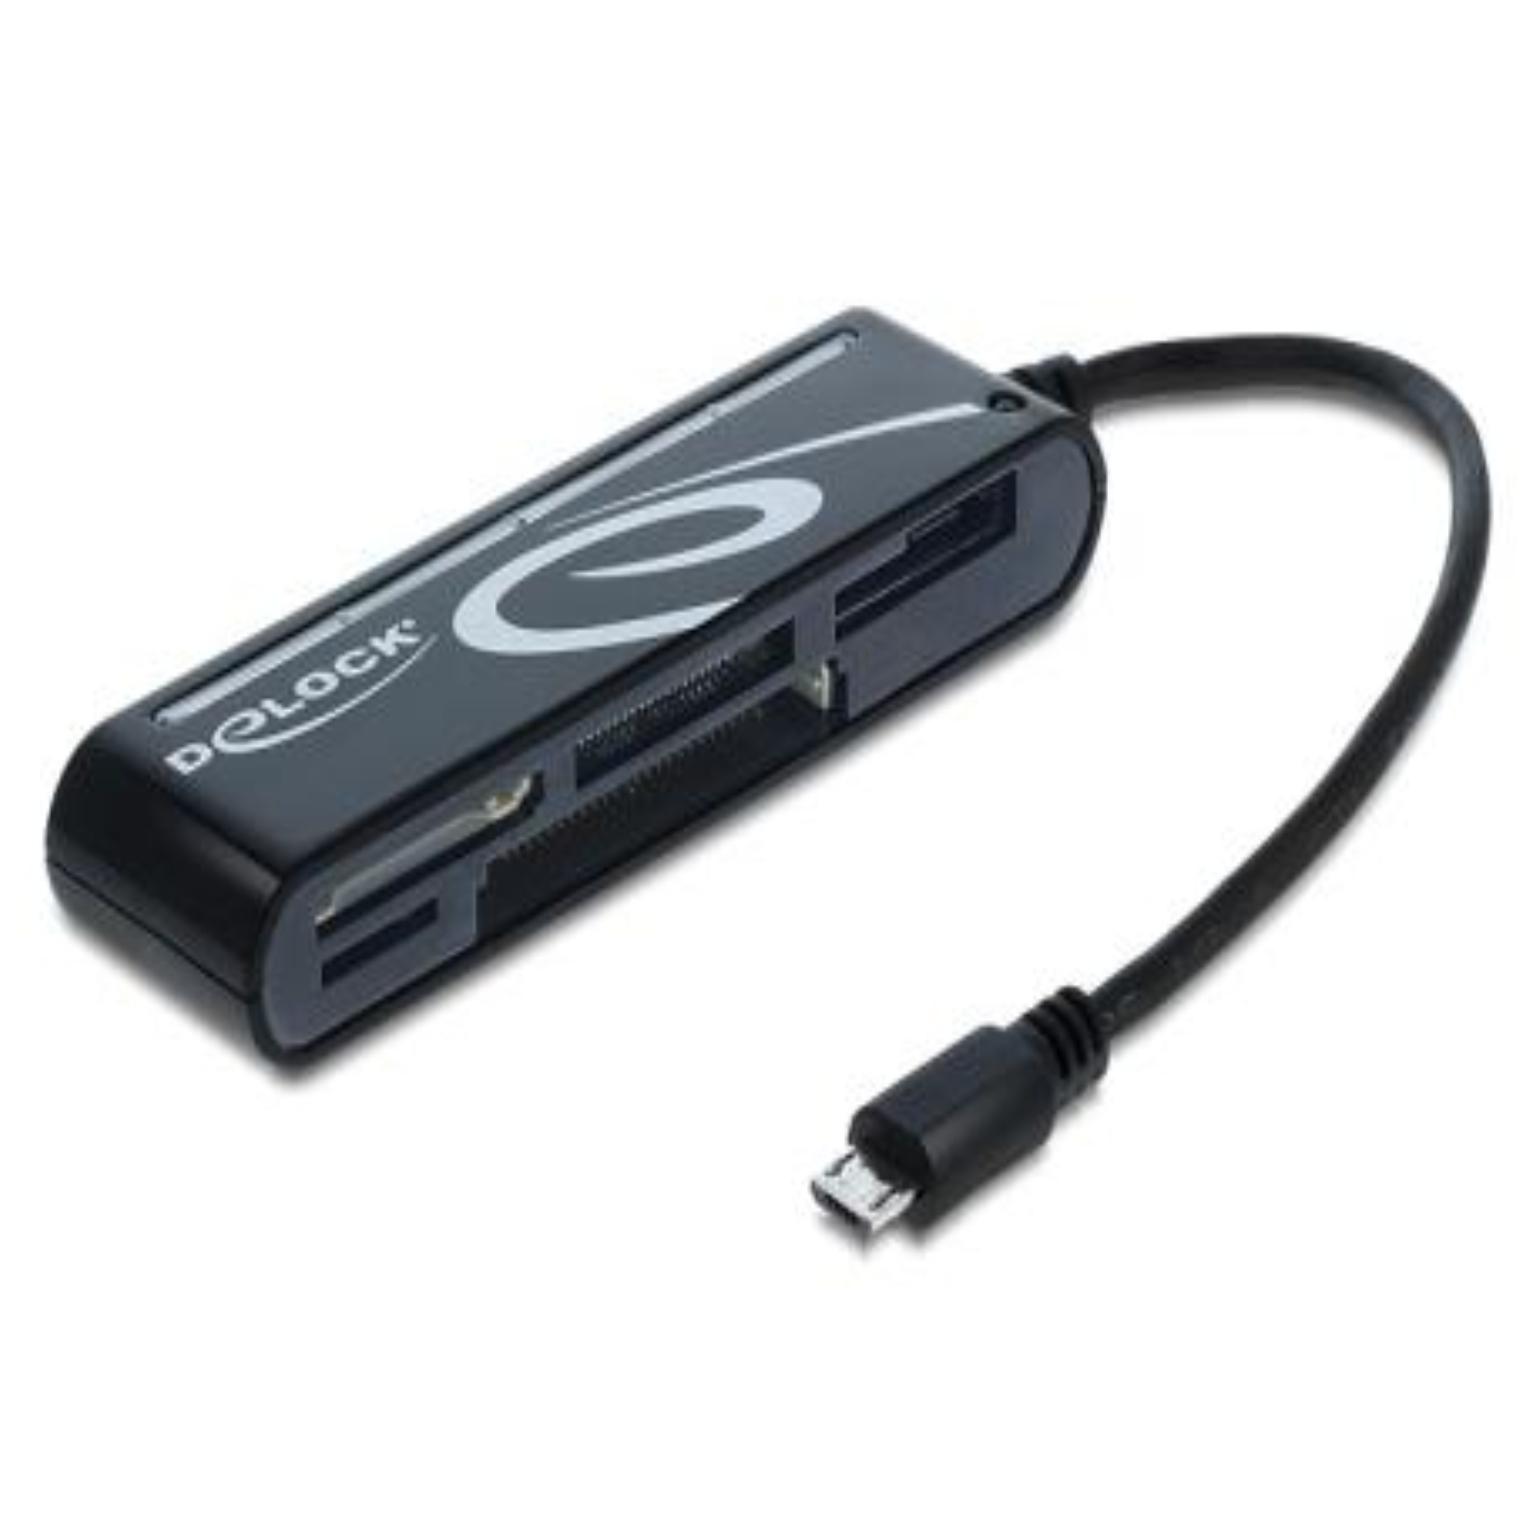 Lecteur de carte Micro USB OTG - Pour les appareils avec support OTG,  Version : 2.0 - USB Micro B mâle à haut débit jusqu'à 480Mbps, Convient  pour : SD / MMC /